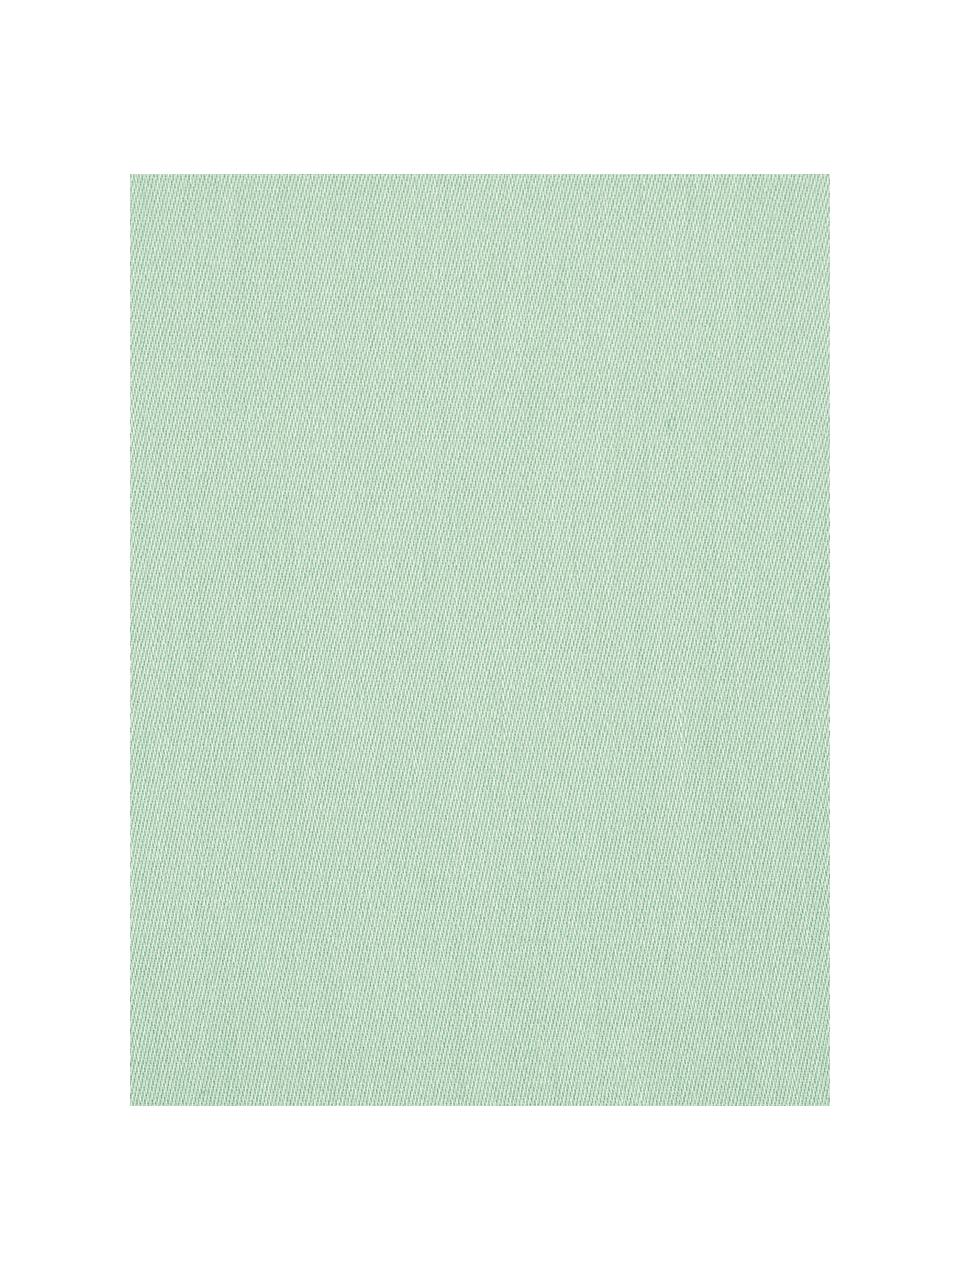 Pościel z satyny bawełnianej Comfort, Szałwiowy zielony, 155 x 220 cm + 1 poduszka 80 x 80 cm